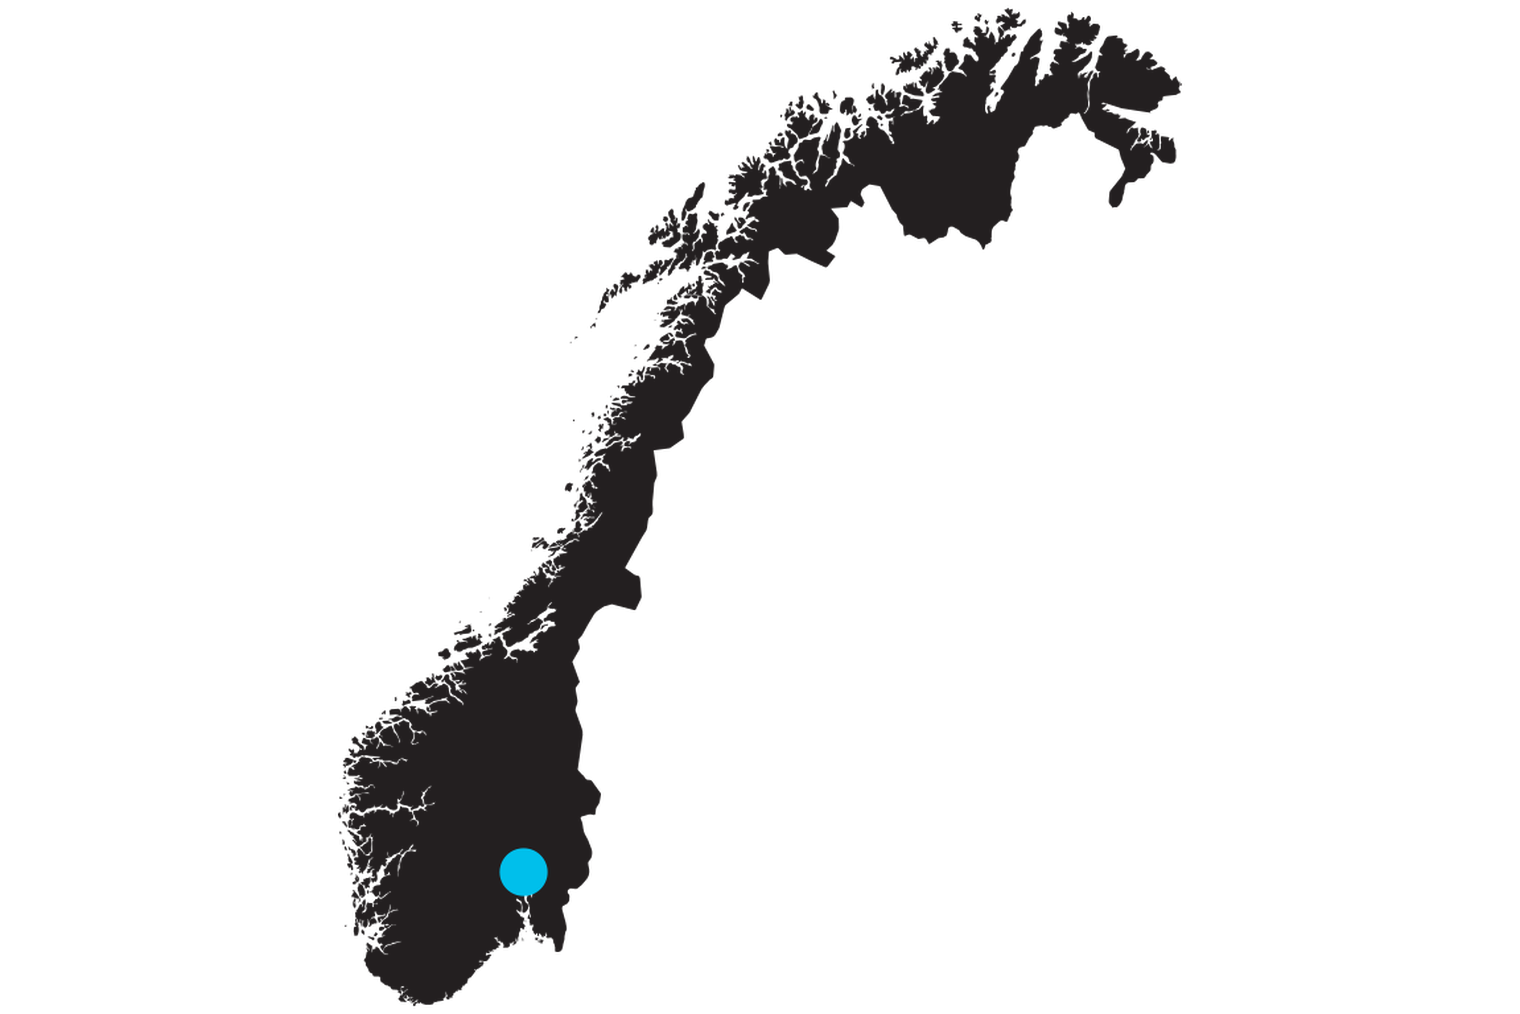 Esboço de um mapa da Noruega com uma marca sobre a localização de Oslo